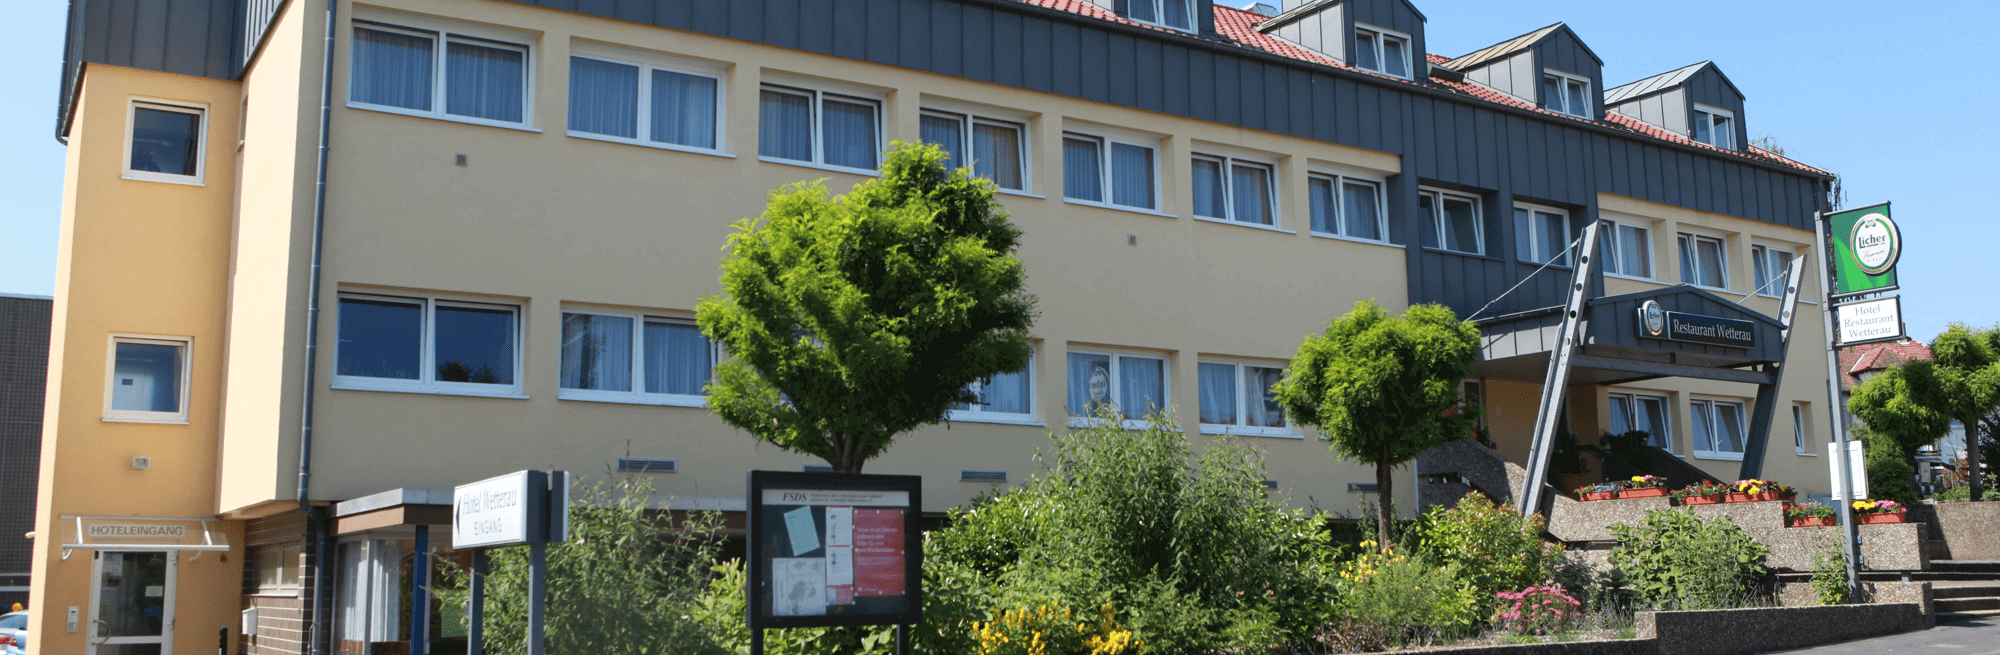 Hotel & Restaurant Wetterau in Wölfersheim bei Ober-Mörlen